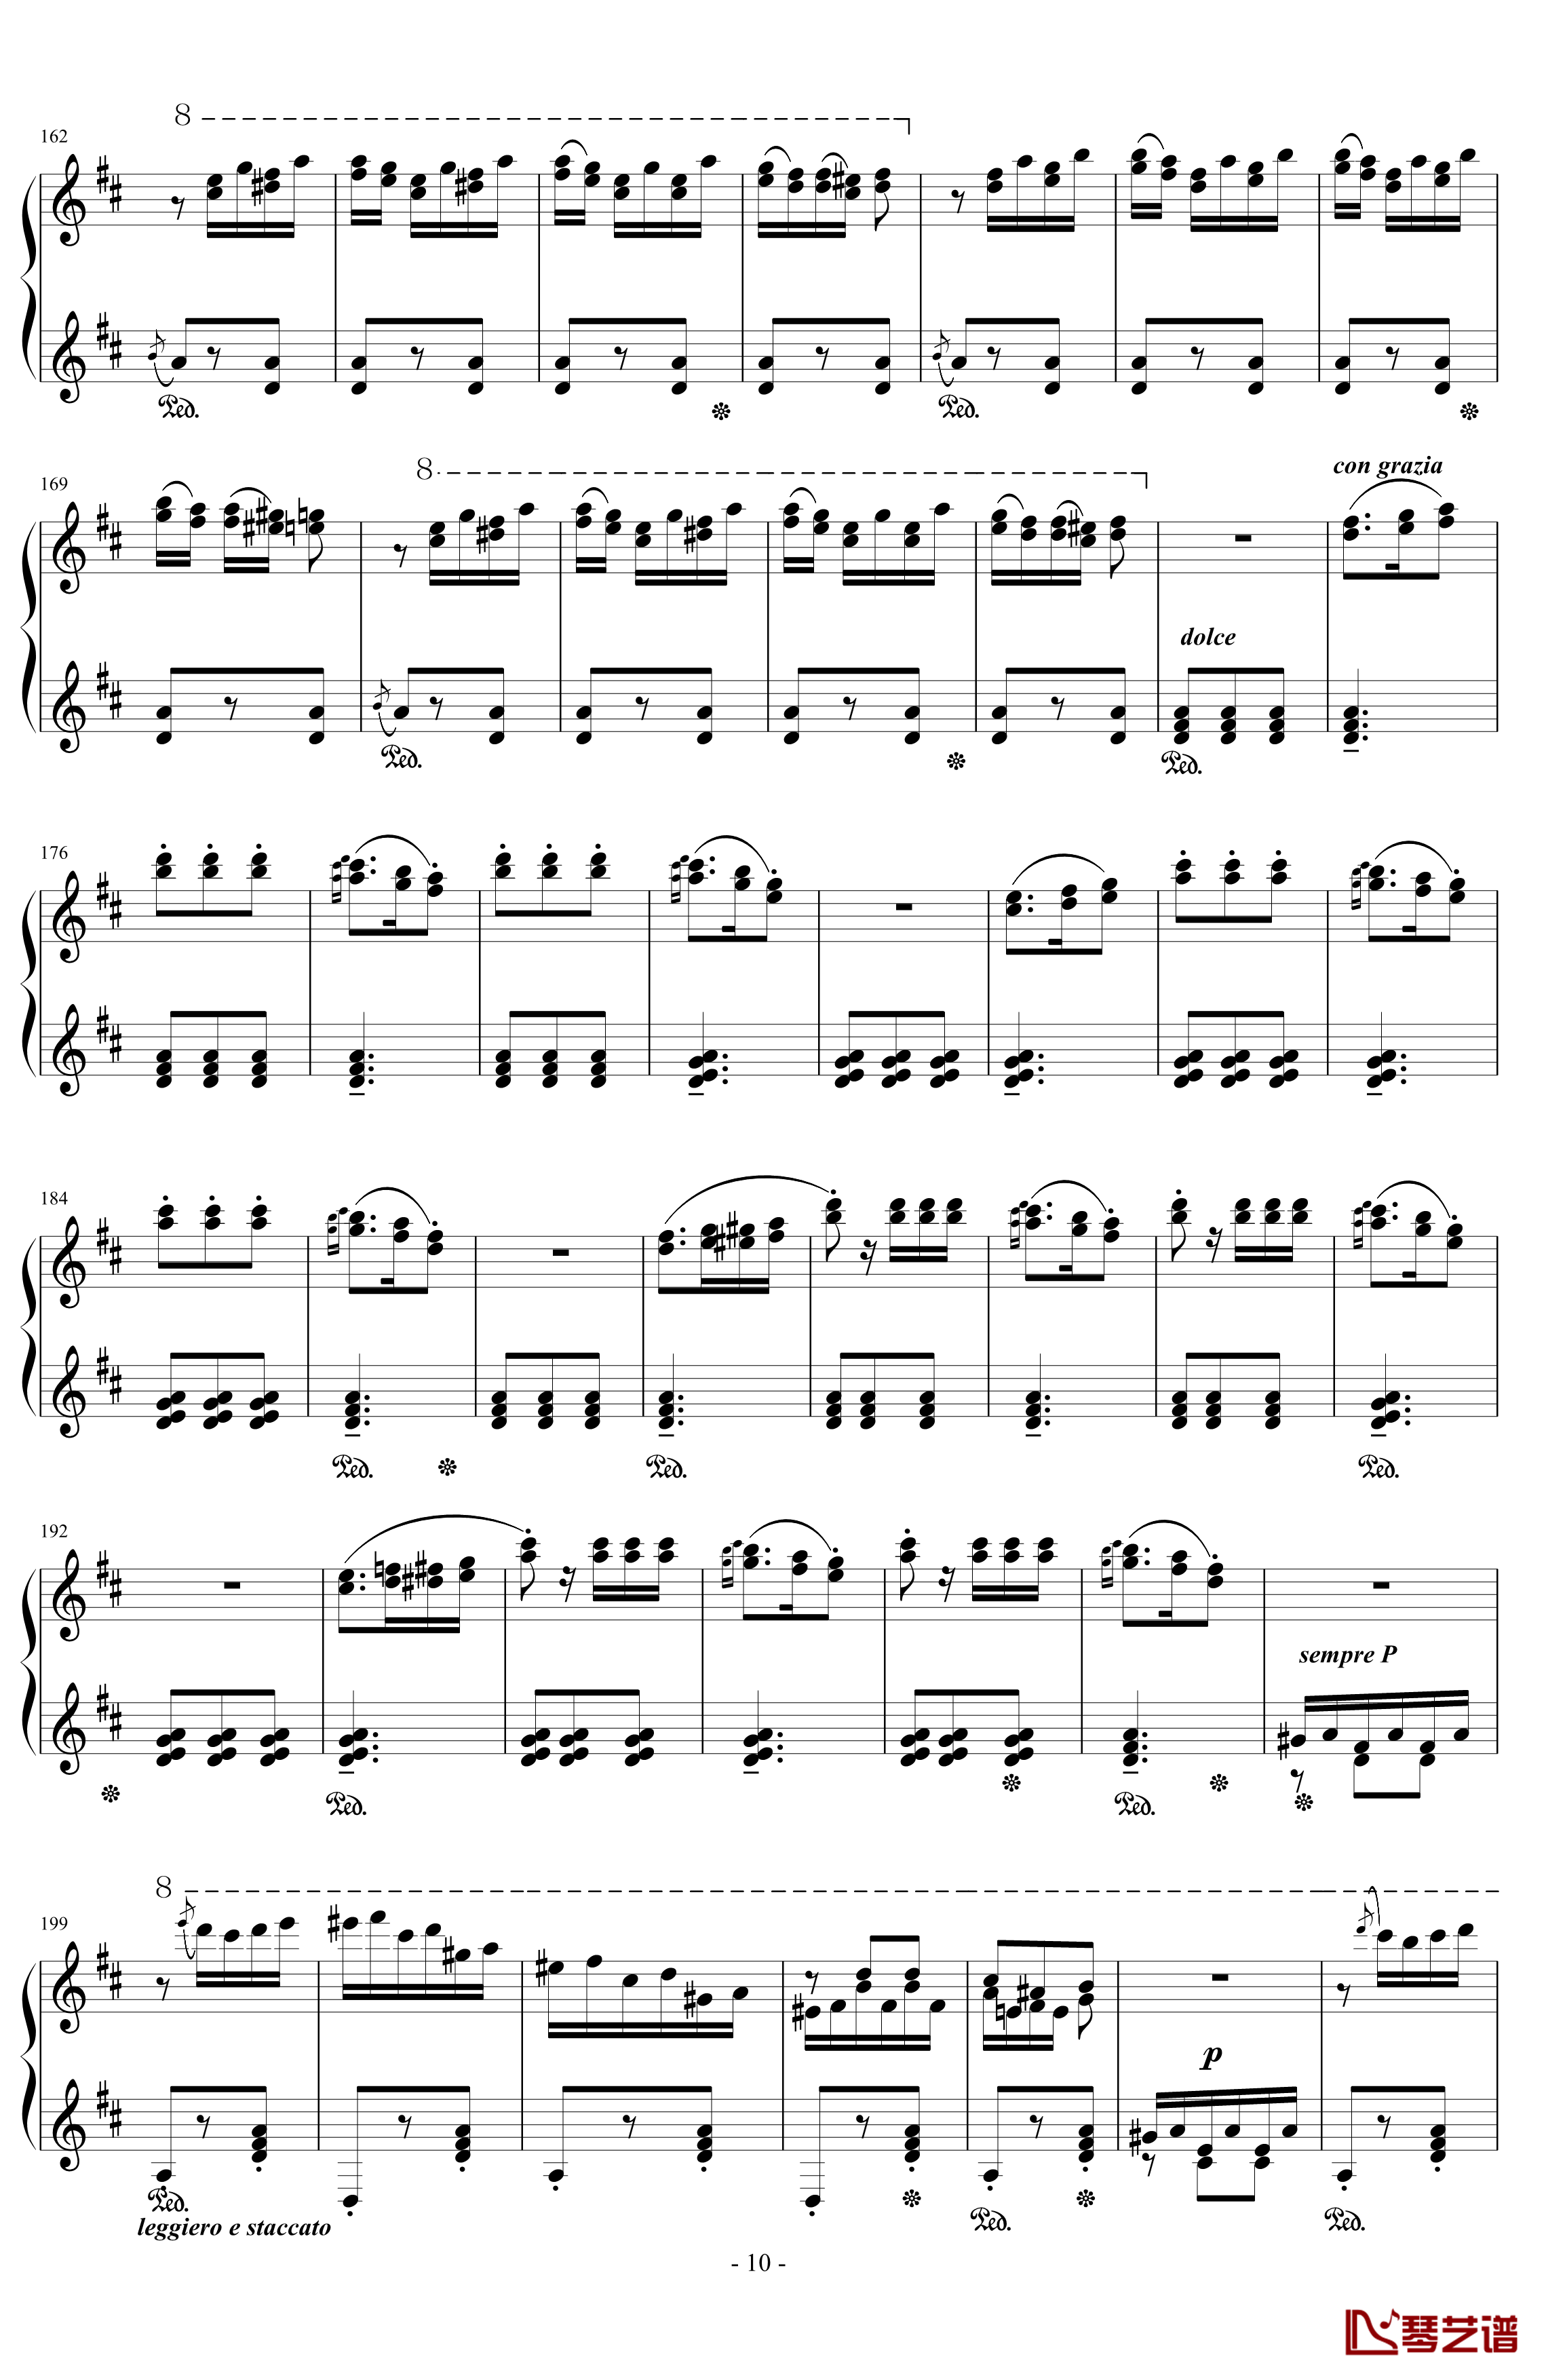 西班牙狂想曲钢琴谱-难度极高的炫技大作-李斯特10